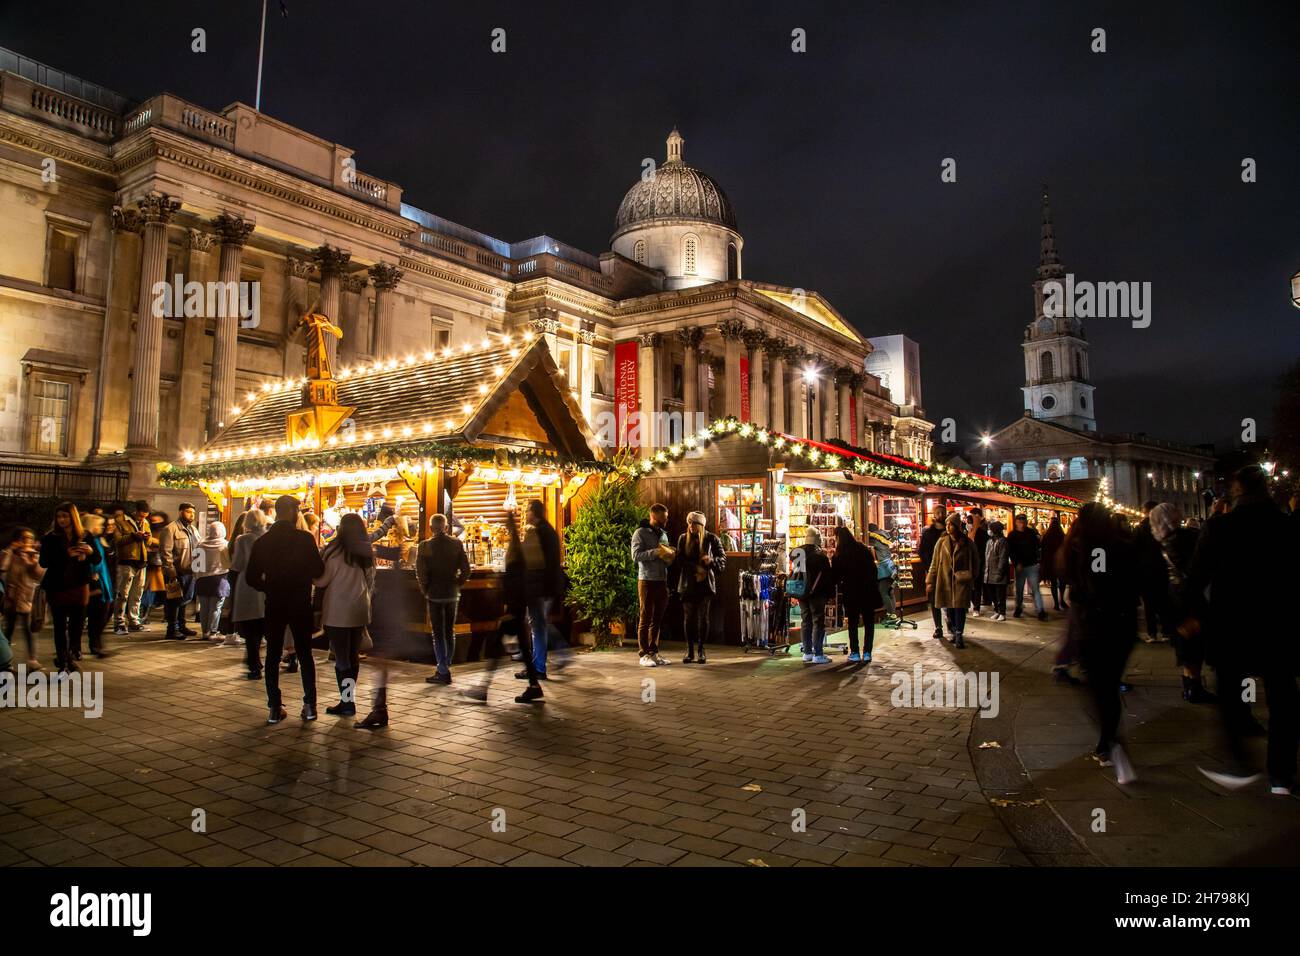 LONDRA, Regno Unito - 20 NOVEMBRE 2021: Mercatini di Natale e bancarelle fuori dalla National Gallery a Trafalgar Square. Molte persone possono essere viste. Foto Stock